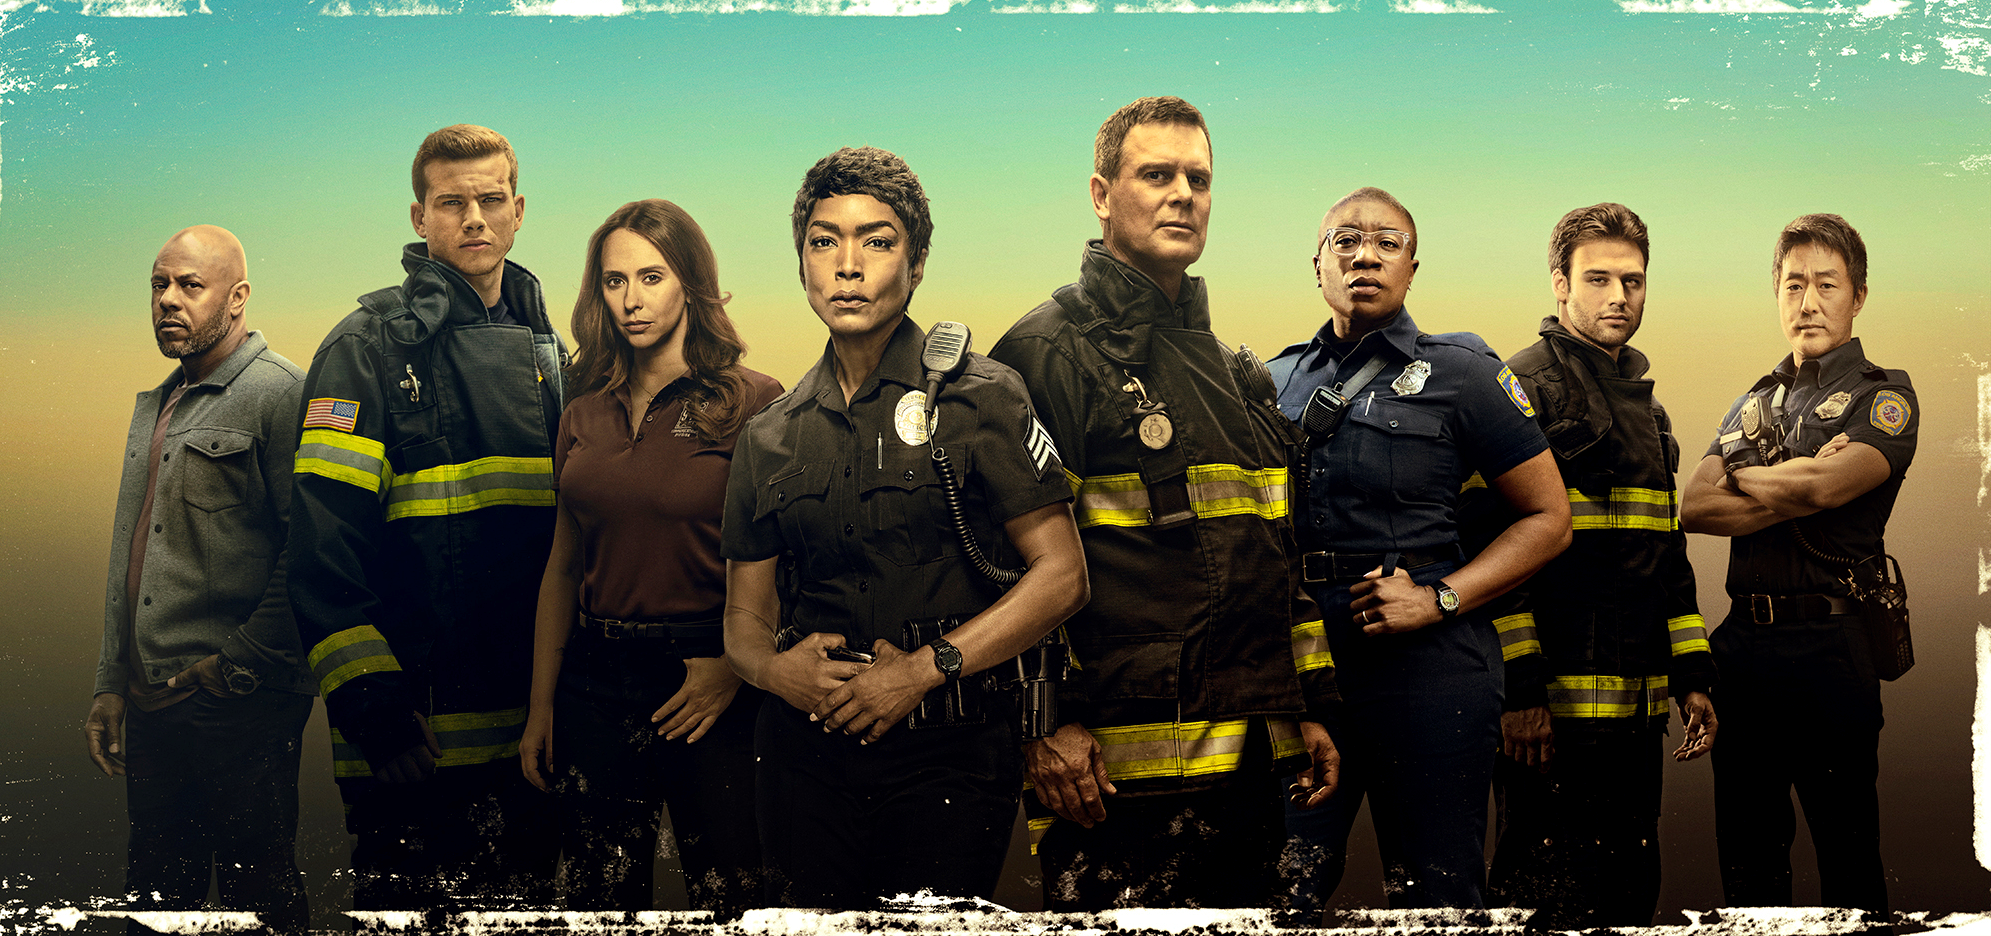 9-1-1 serie de bomberos y paramédicos se estrena por FOX Channel | Ryan  Murphy | Cine y series | La República